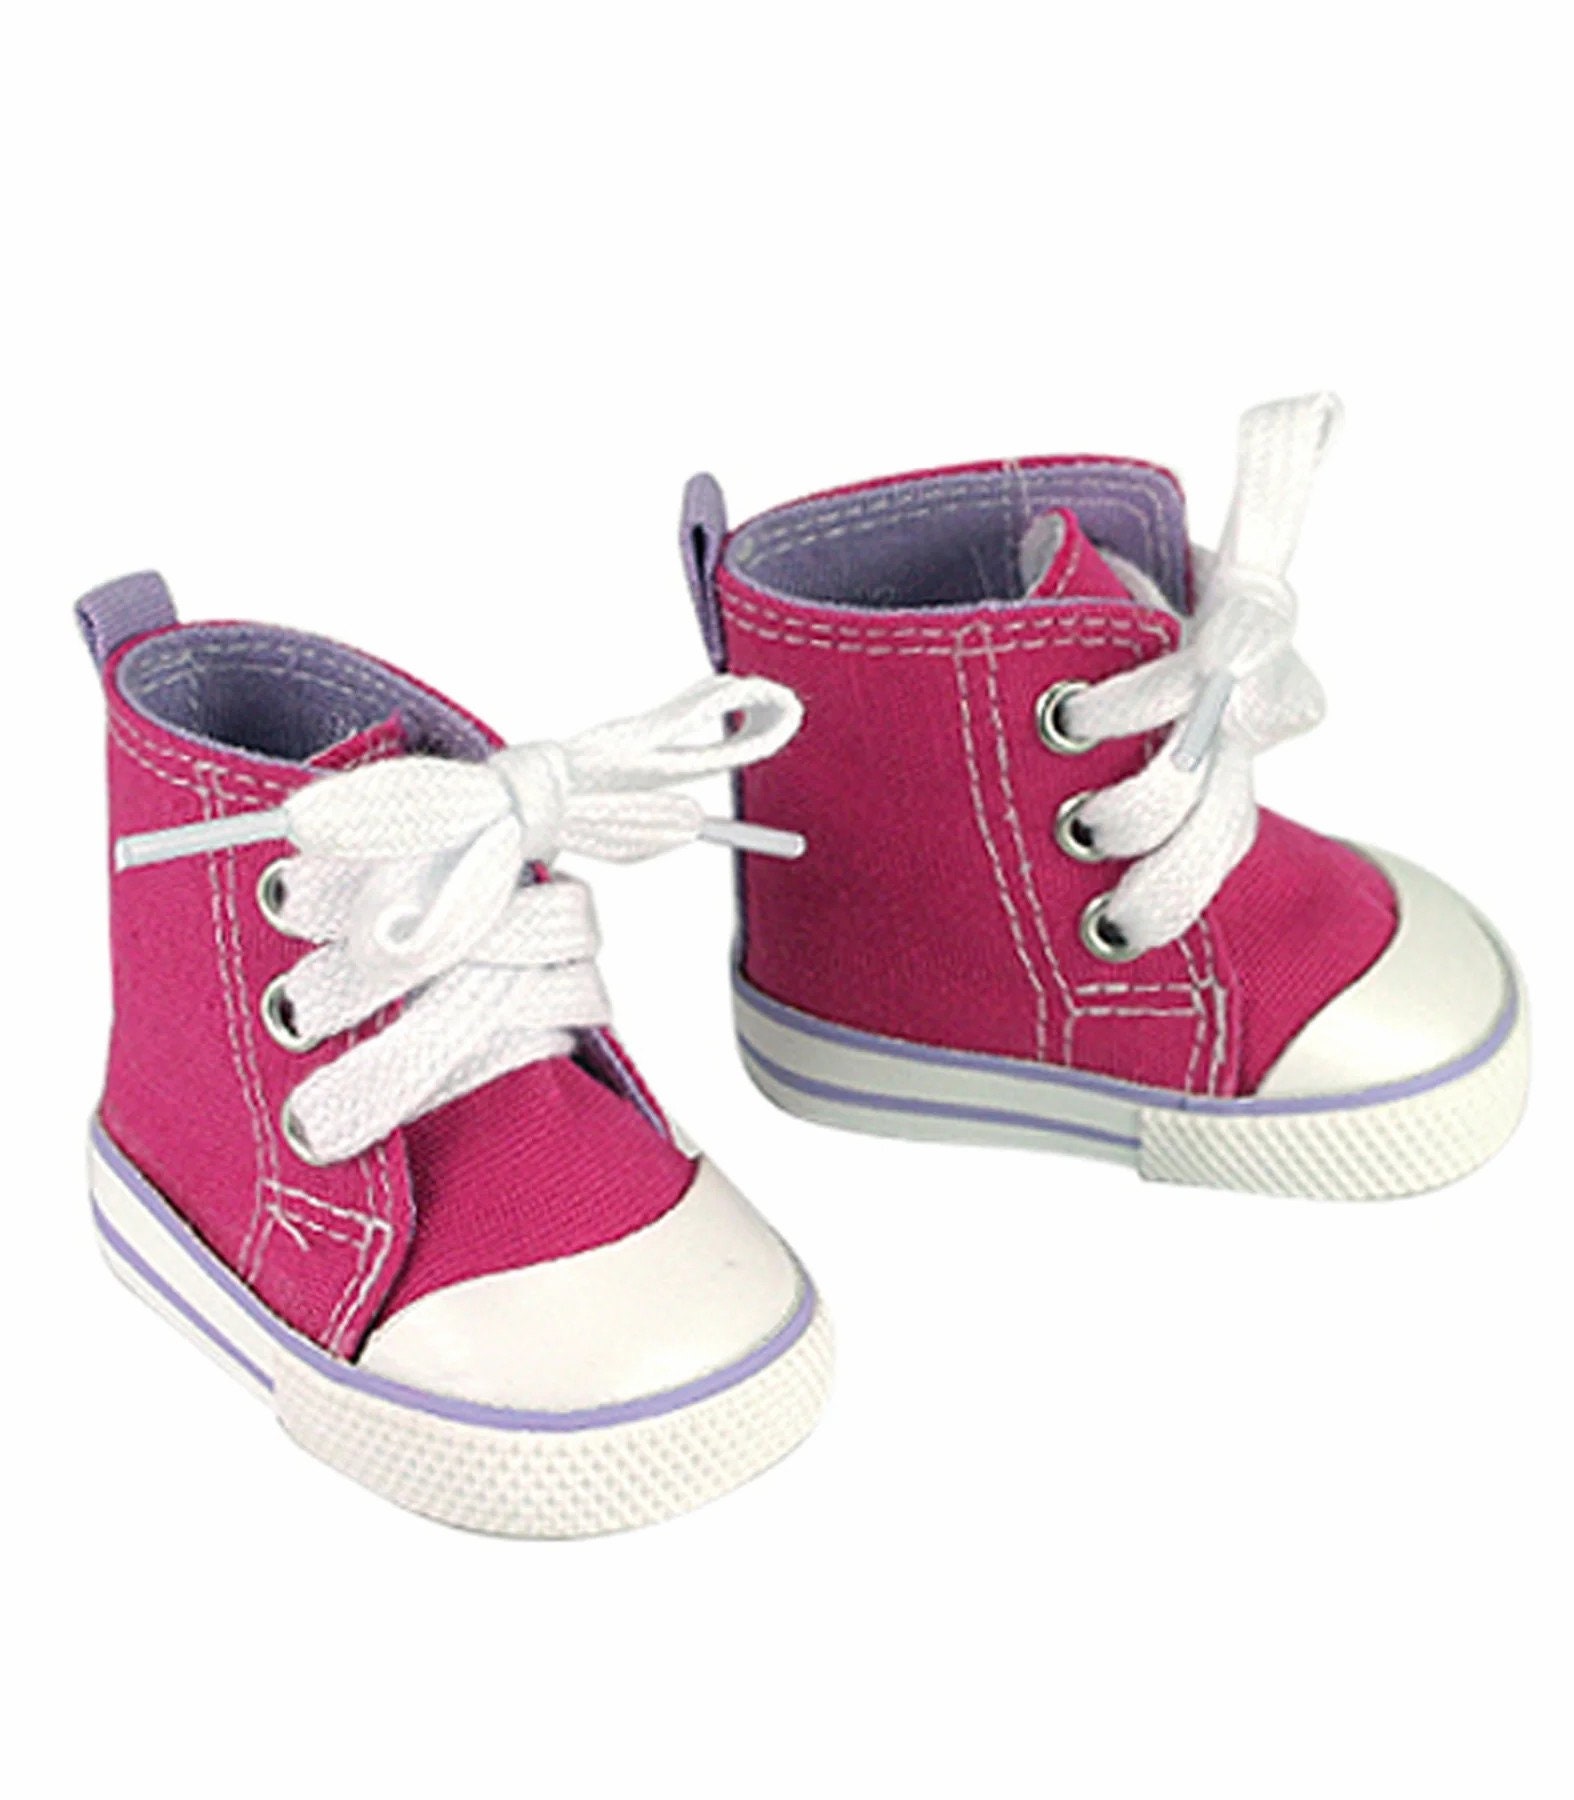 Zapatillas y Botas de Bebé · Deportes · El Corte Inglés (282)